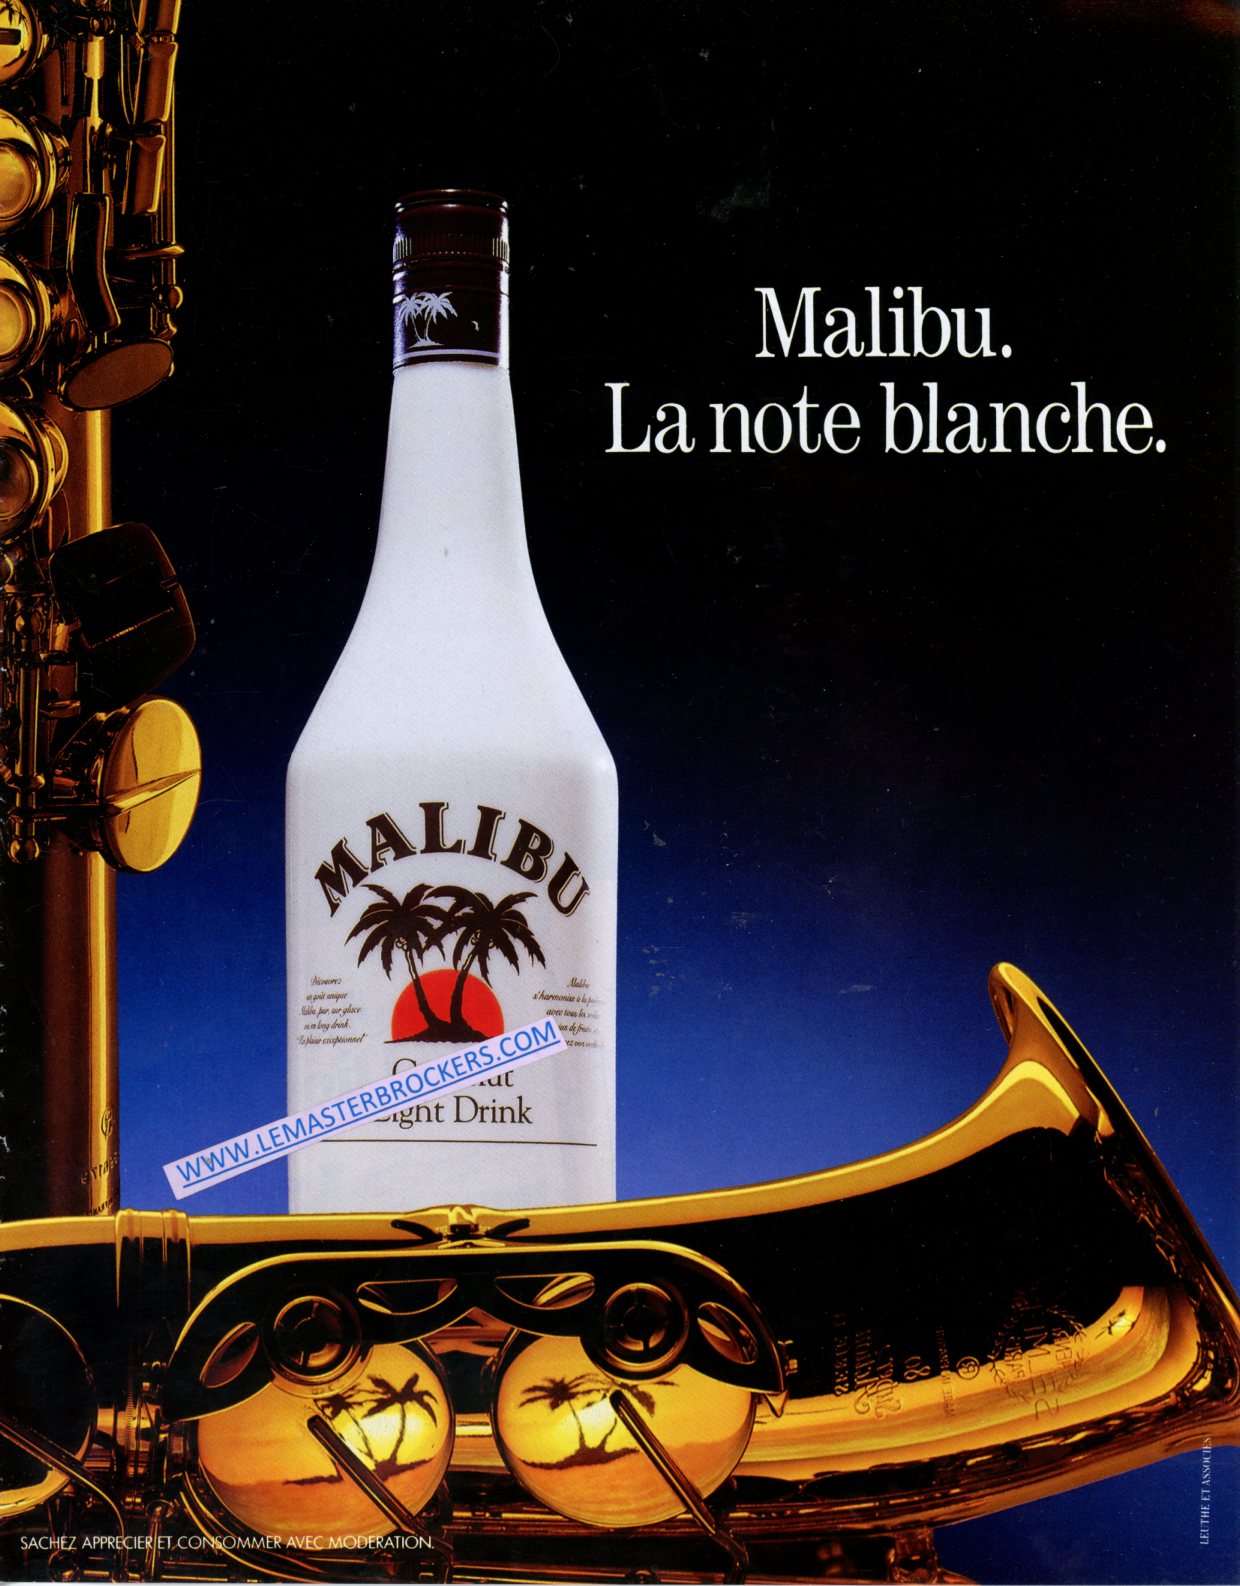 PUBLICITÉ MALIBU LA NOTE BLANCHE - ADVERTISING 1987